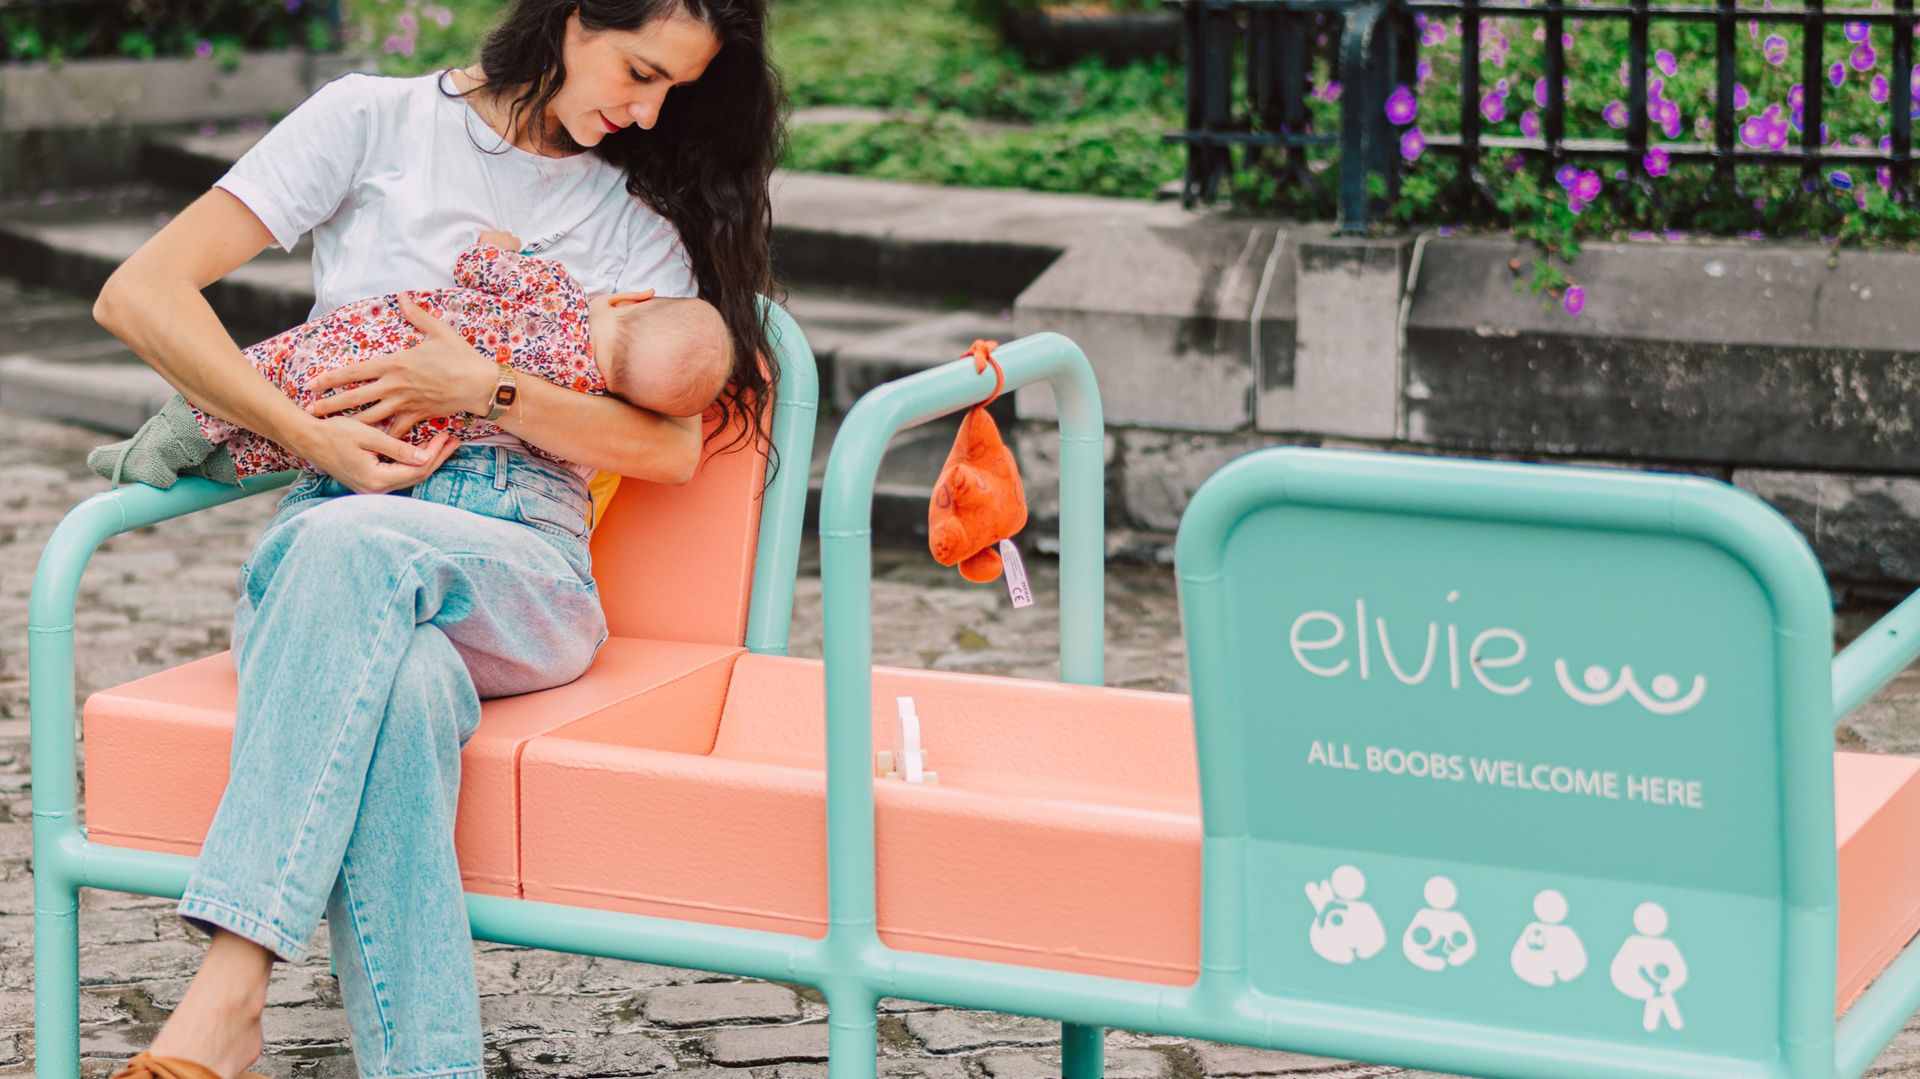 Durant tout le mois d’août, un banc spécialement conçu pour allaiter ou tirer son lait sera installé dans la ville de Courtrai, en Belgique. Une initiative de la société Elvie, qui vise à briser les tabous autour de l’allaitement en public.